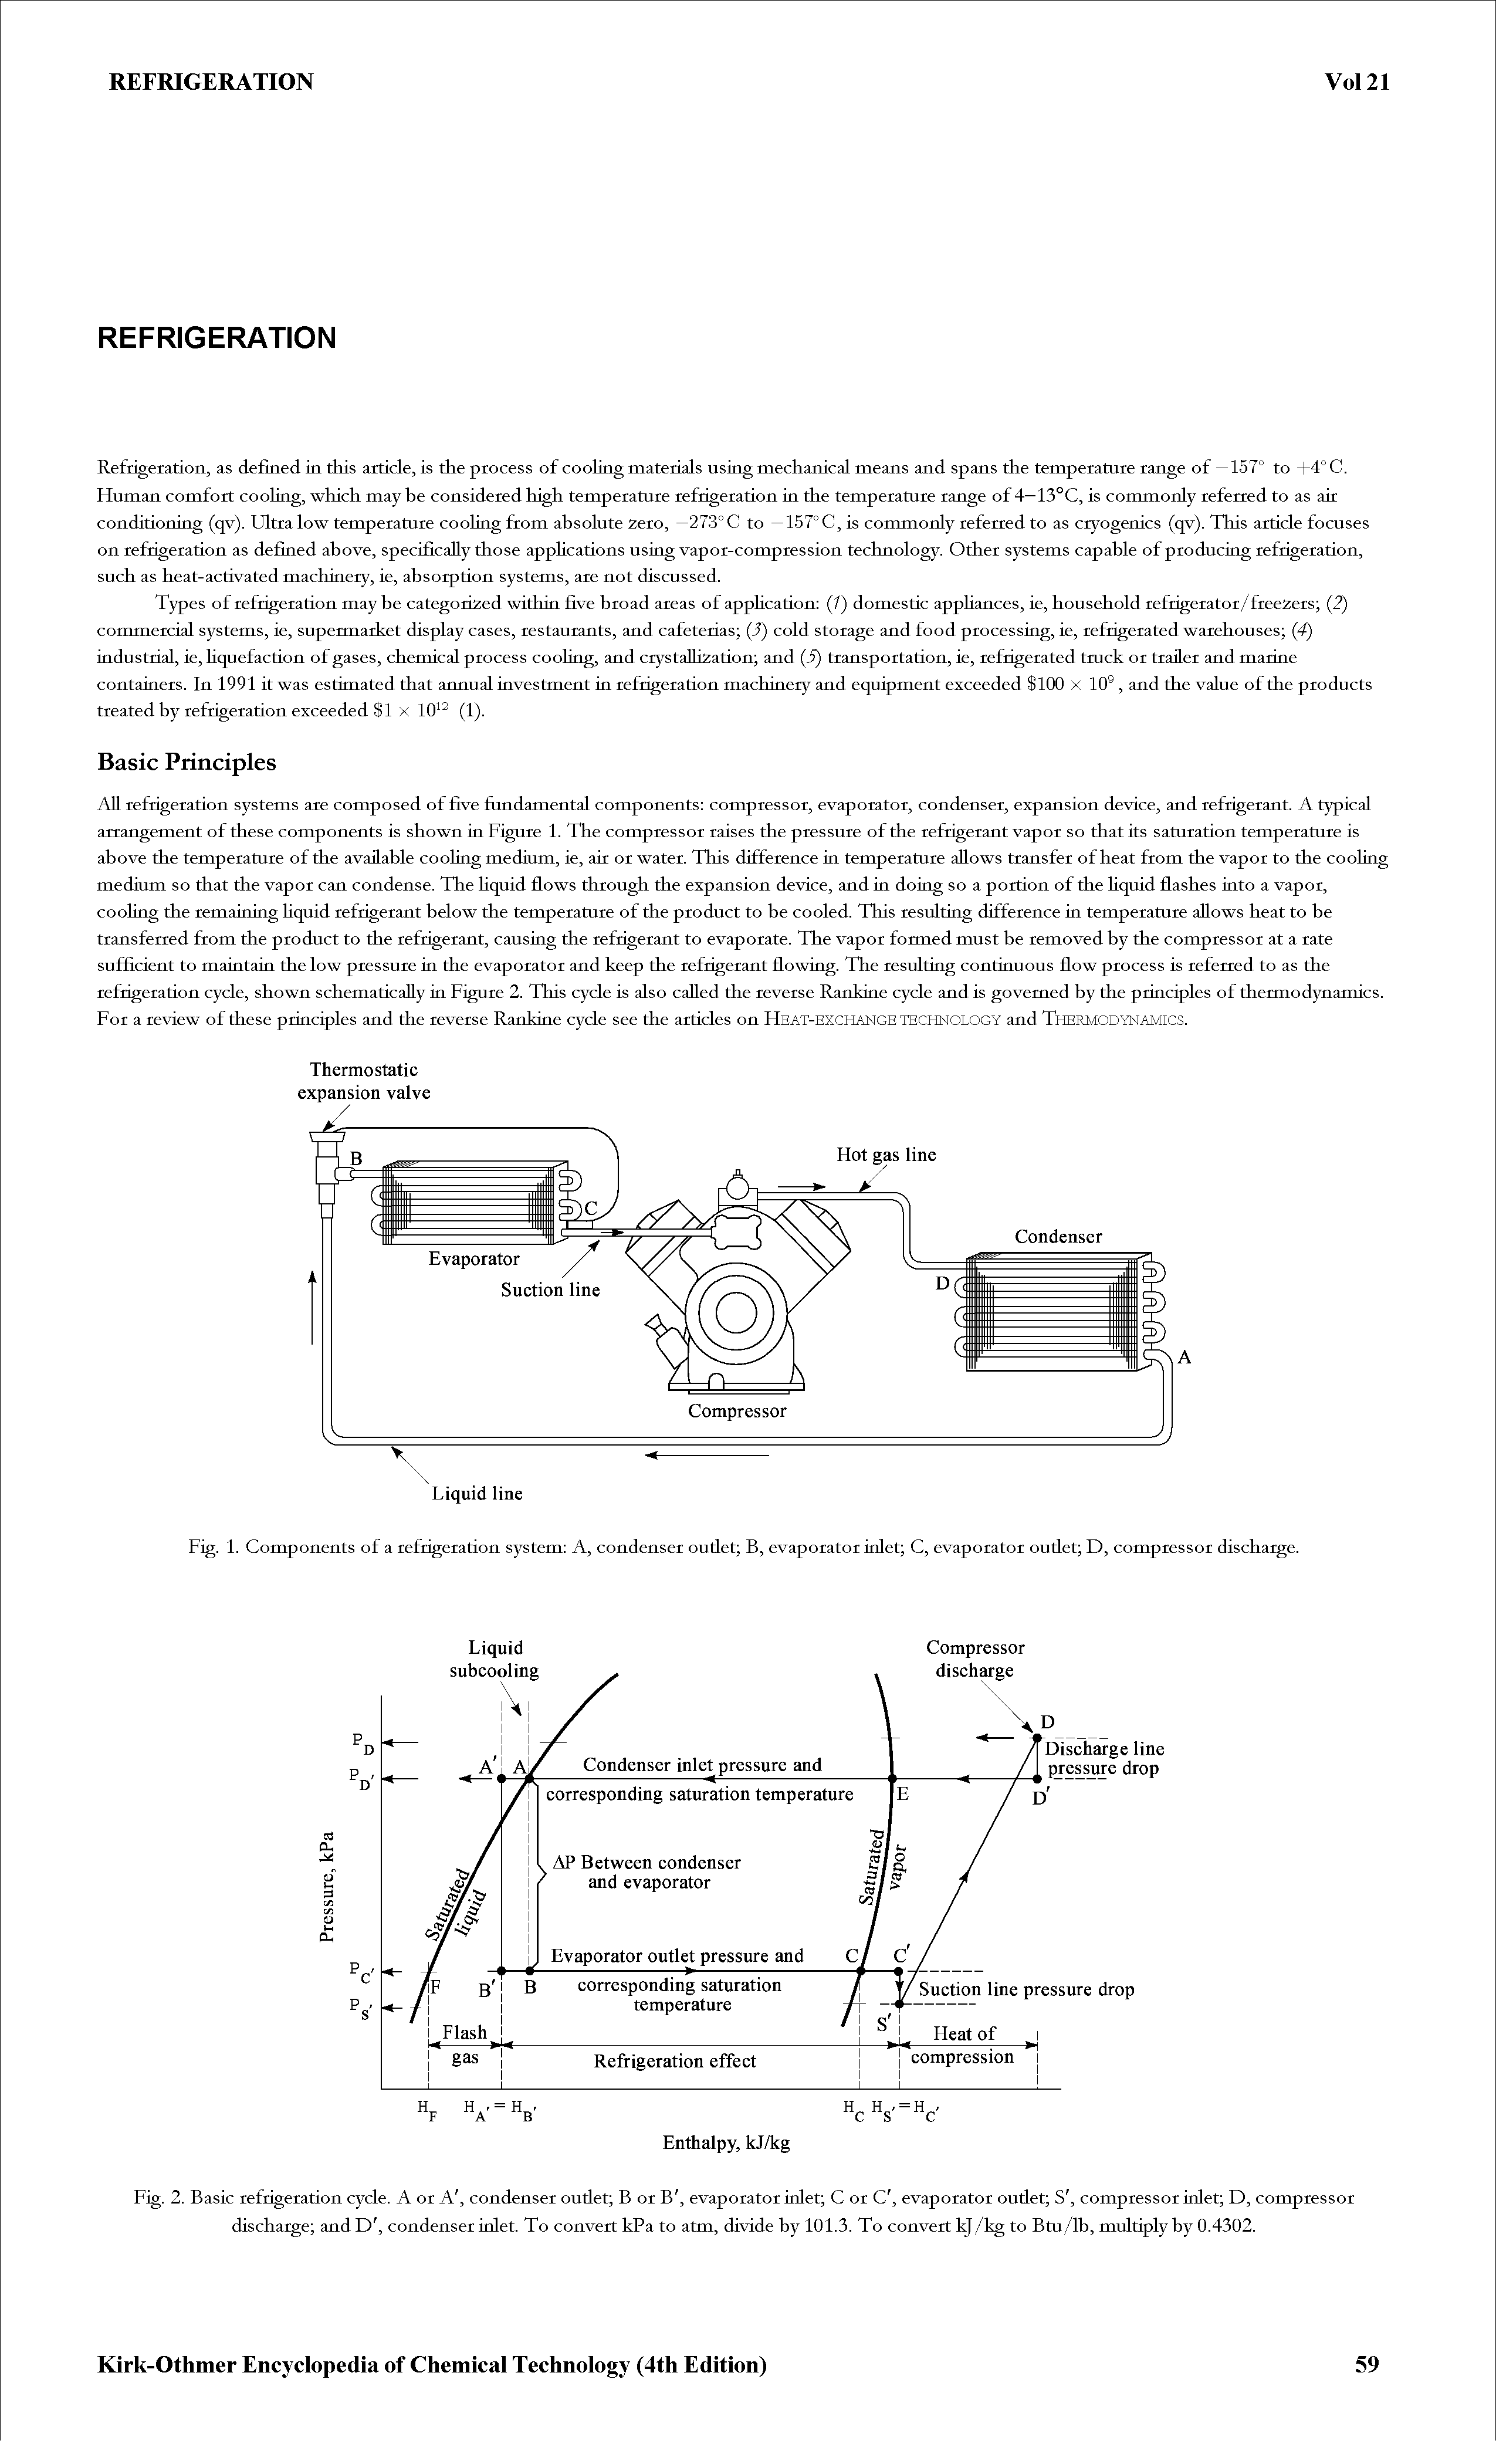 Fig. 1. Components of a refrigeration system A, condenser outlet B, evaporator inlet C, evaporator outlet D, compressor discharge.